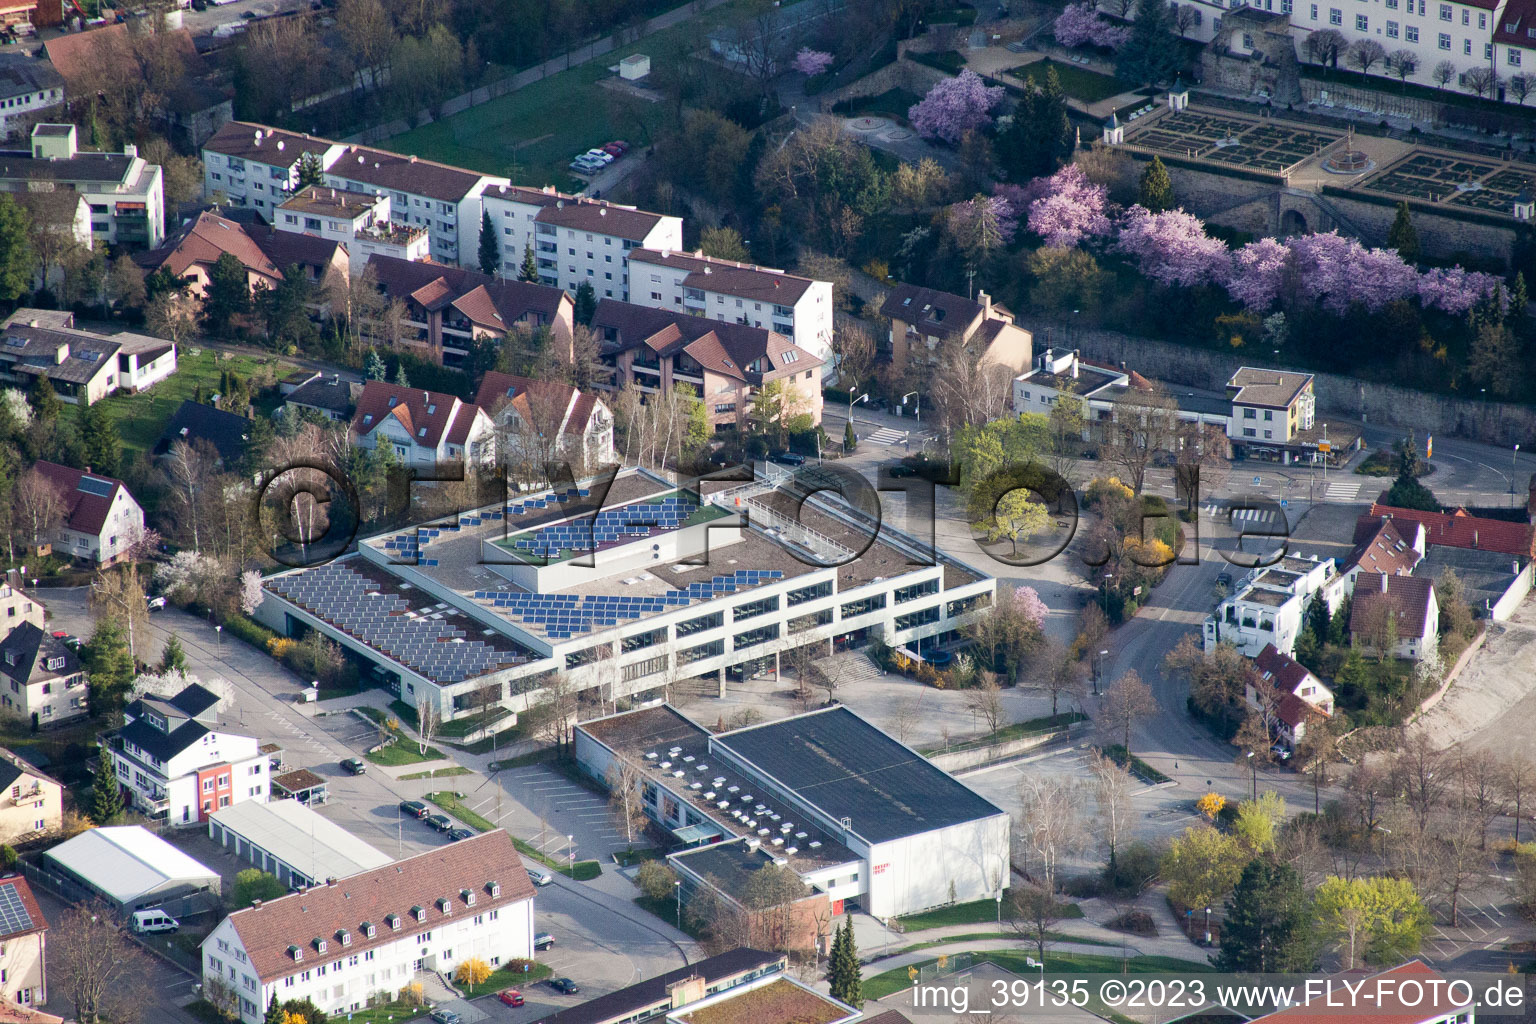 Johannes-Kepler-Gymnasium, Lindenstr in Leonberg im Bundesland Baden-Württemberg, Deutschland aus der Drohnenperspektive